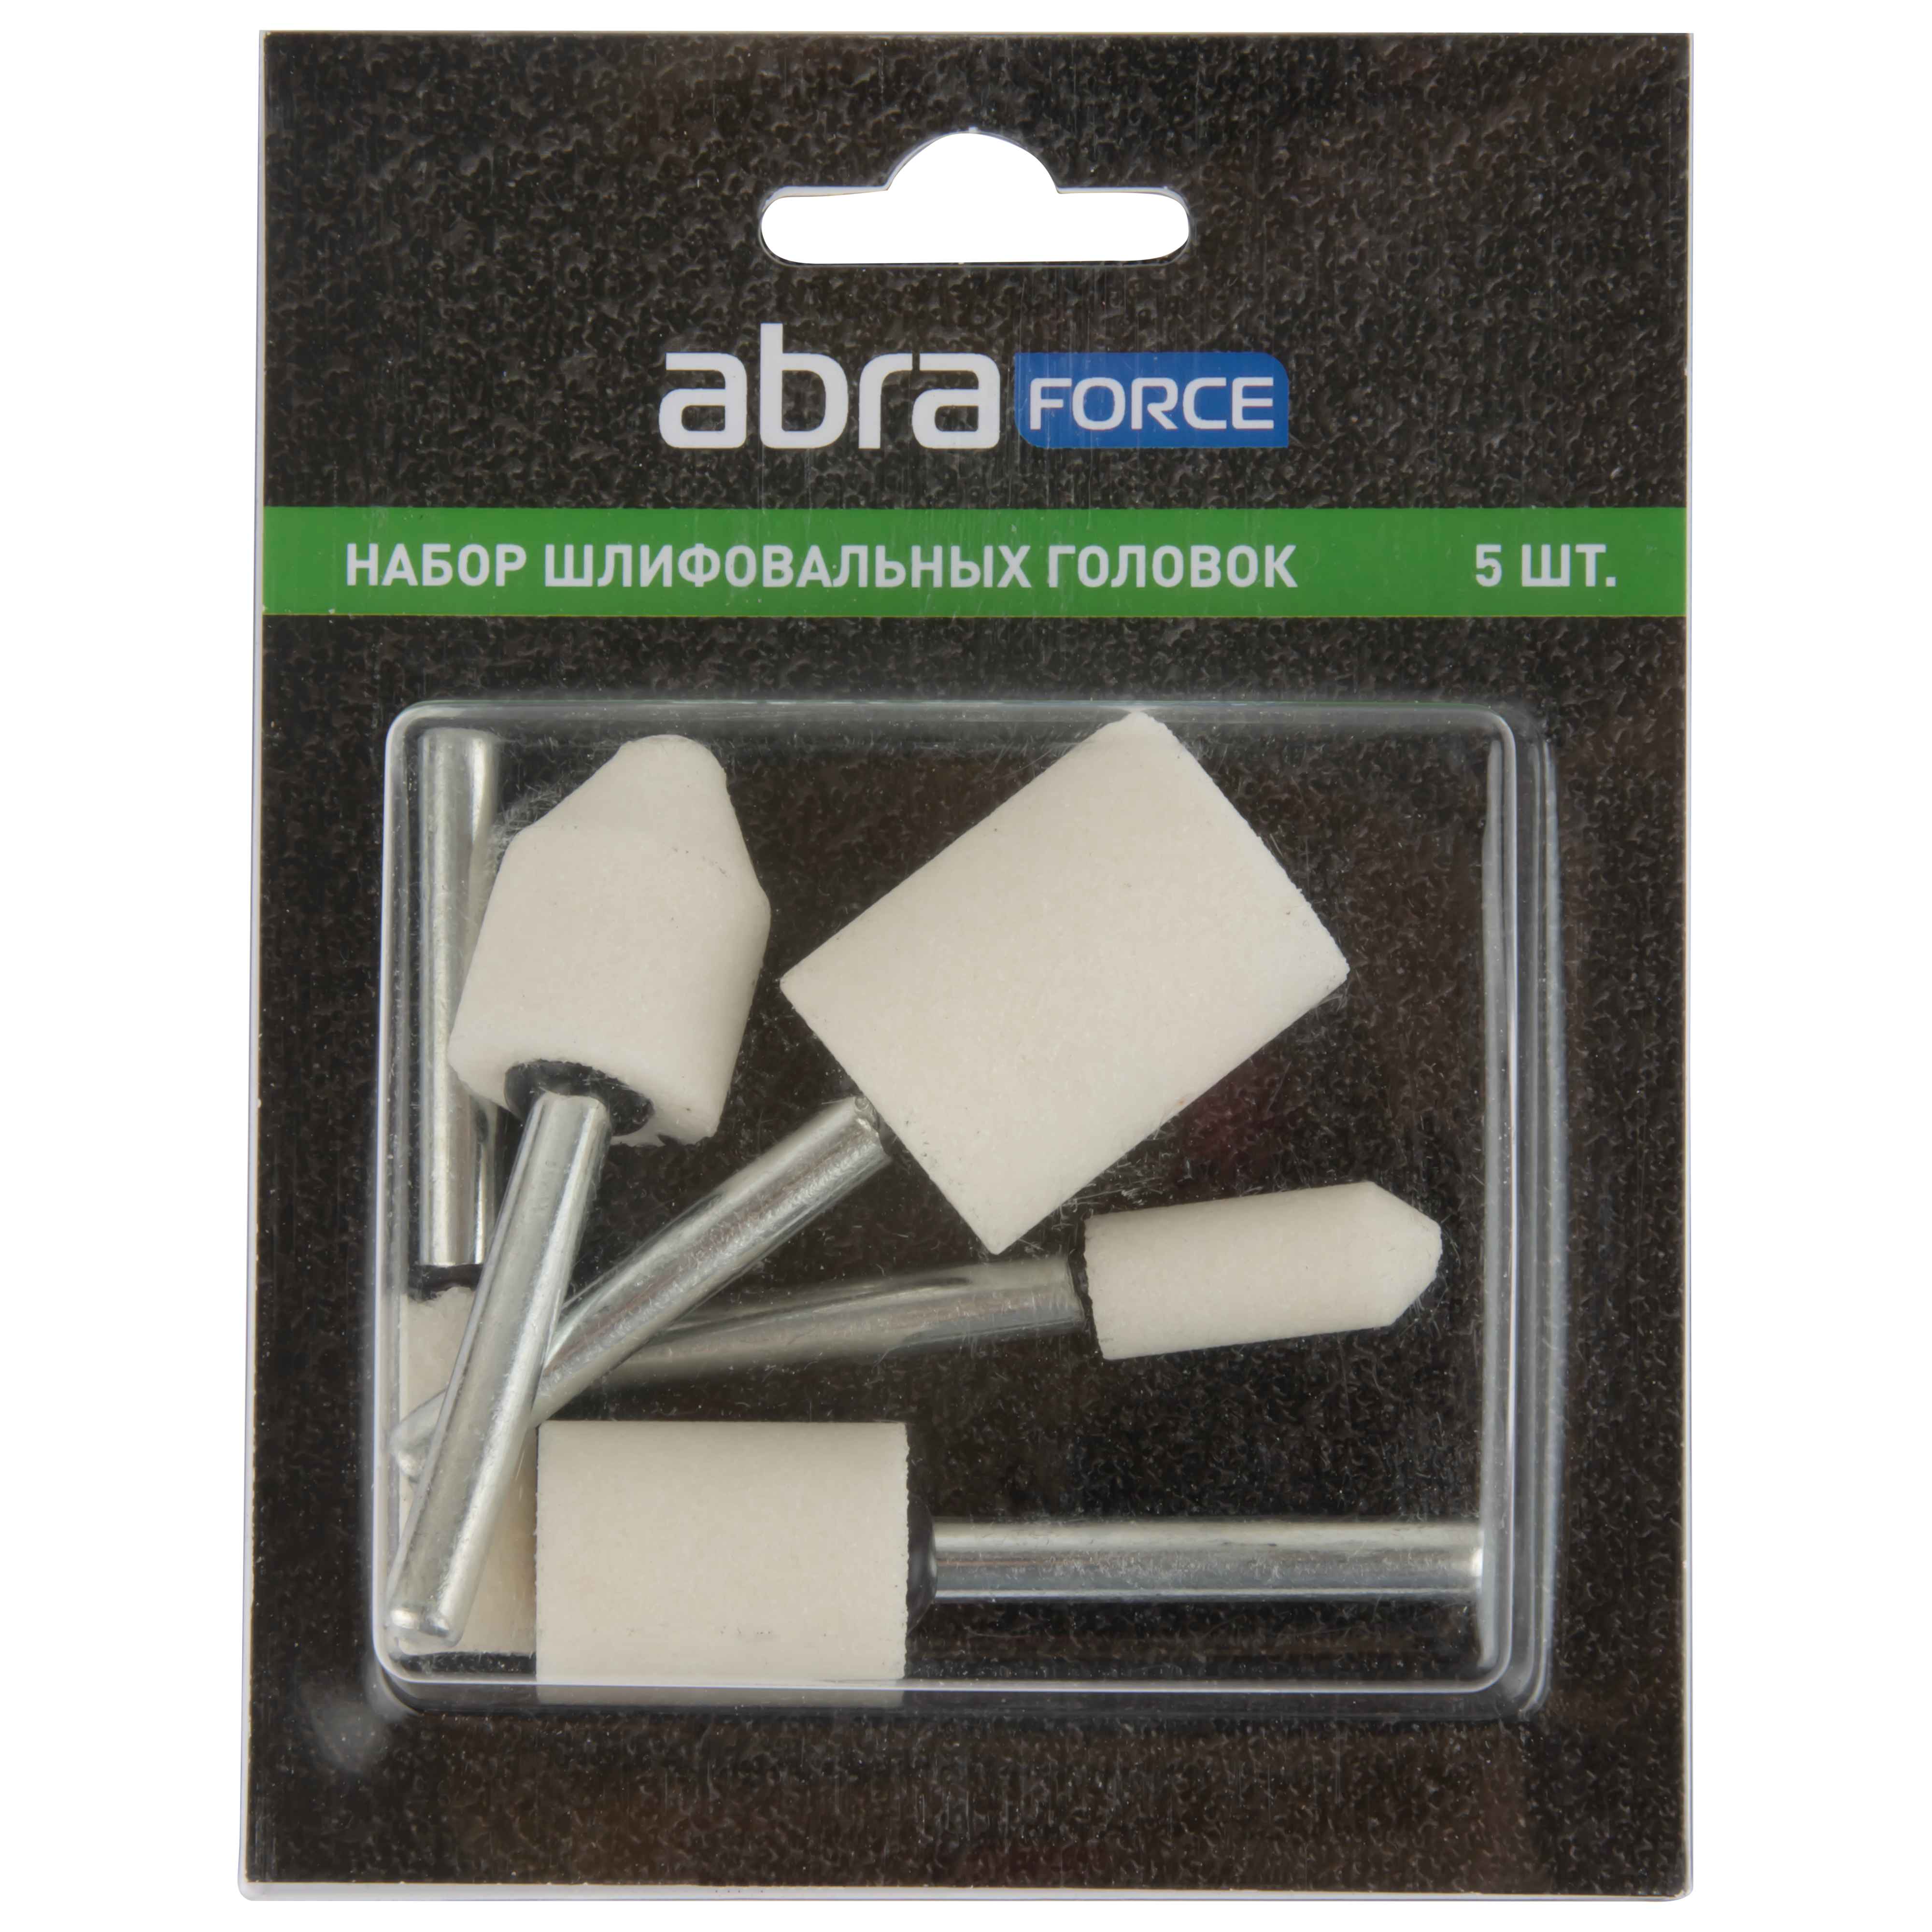 Набор шлифовальных головок ABRAforce, белый электрокорунд P60, 5 штук. набор карандашей 12 штук 1 штука обучающий тренажер для исправления техники письма точилка